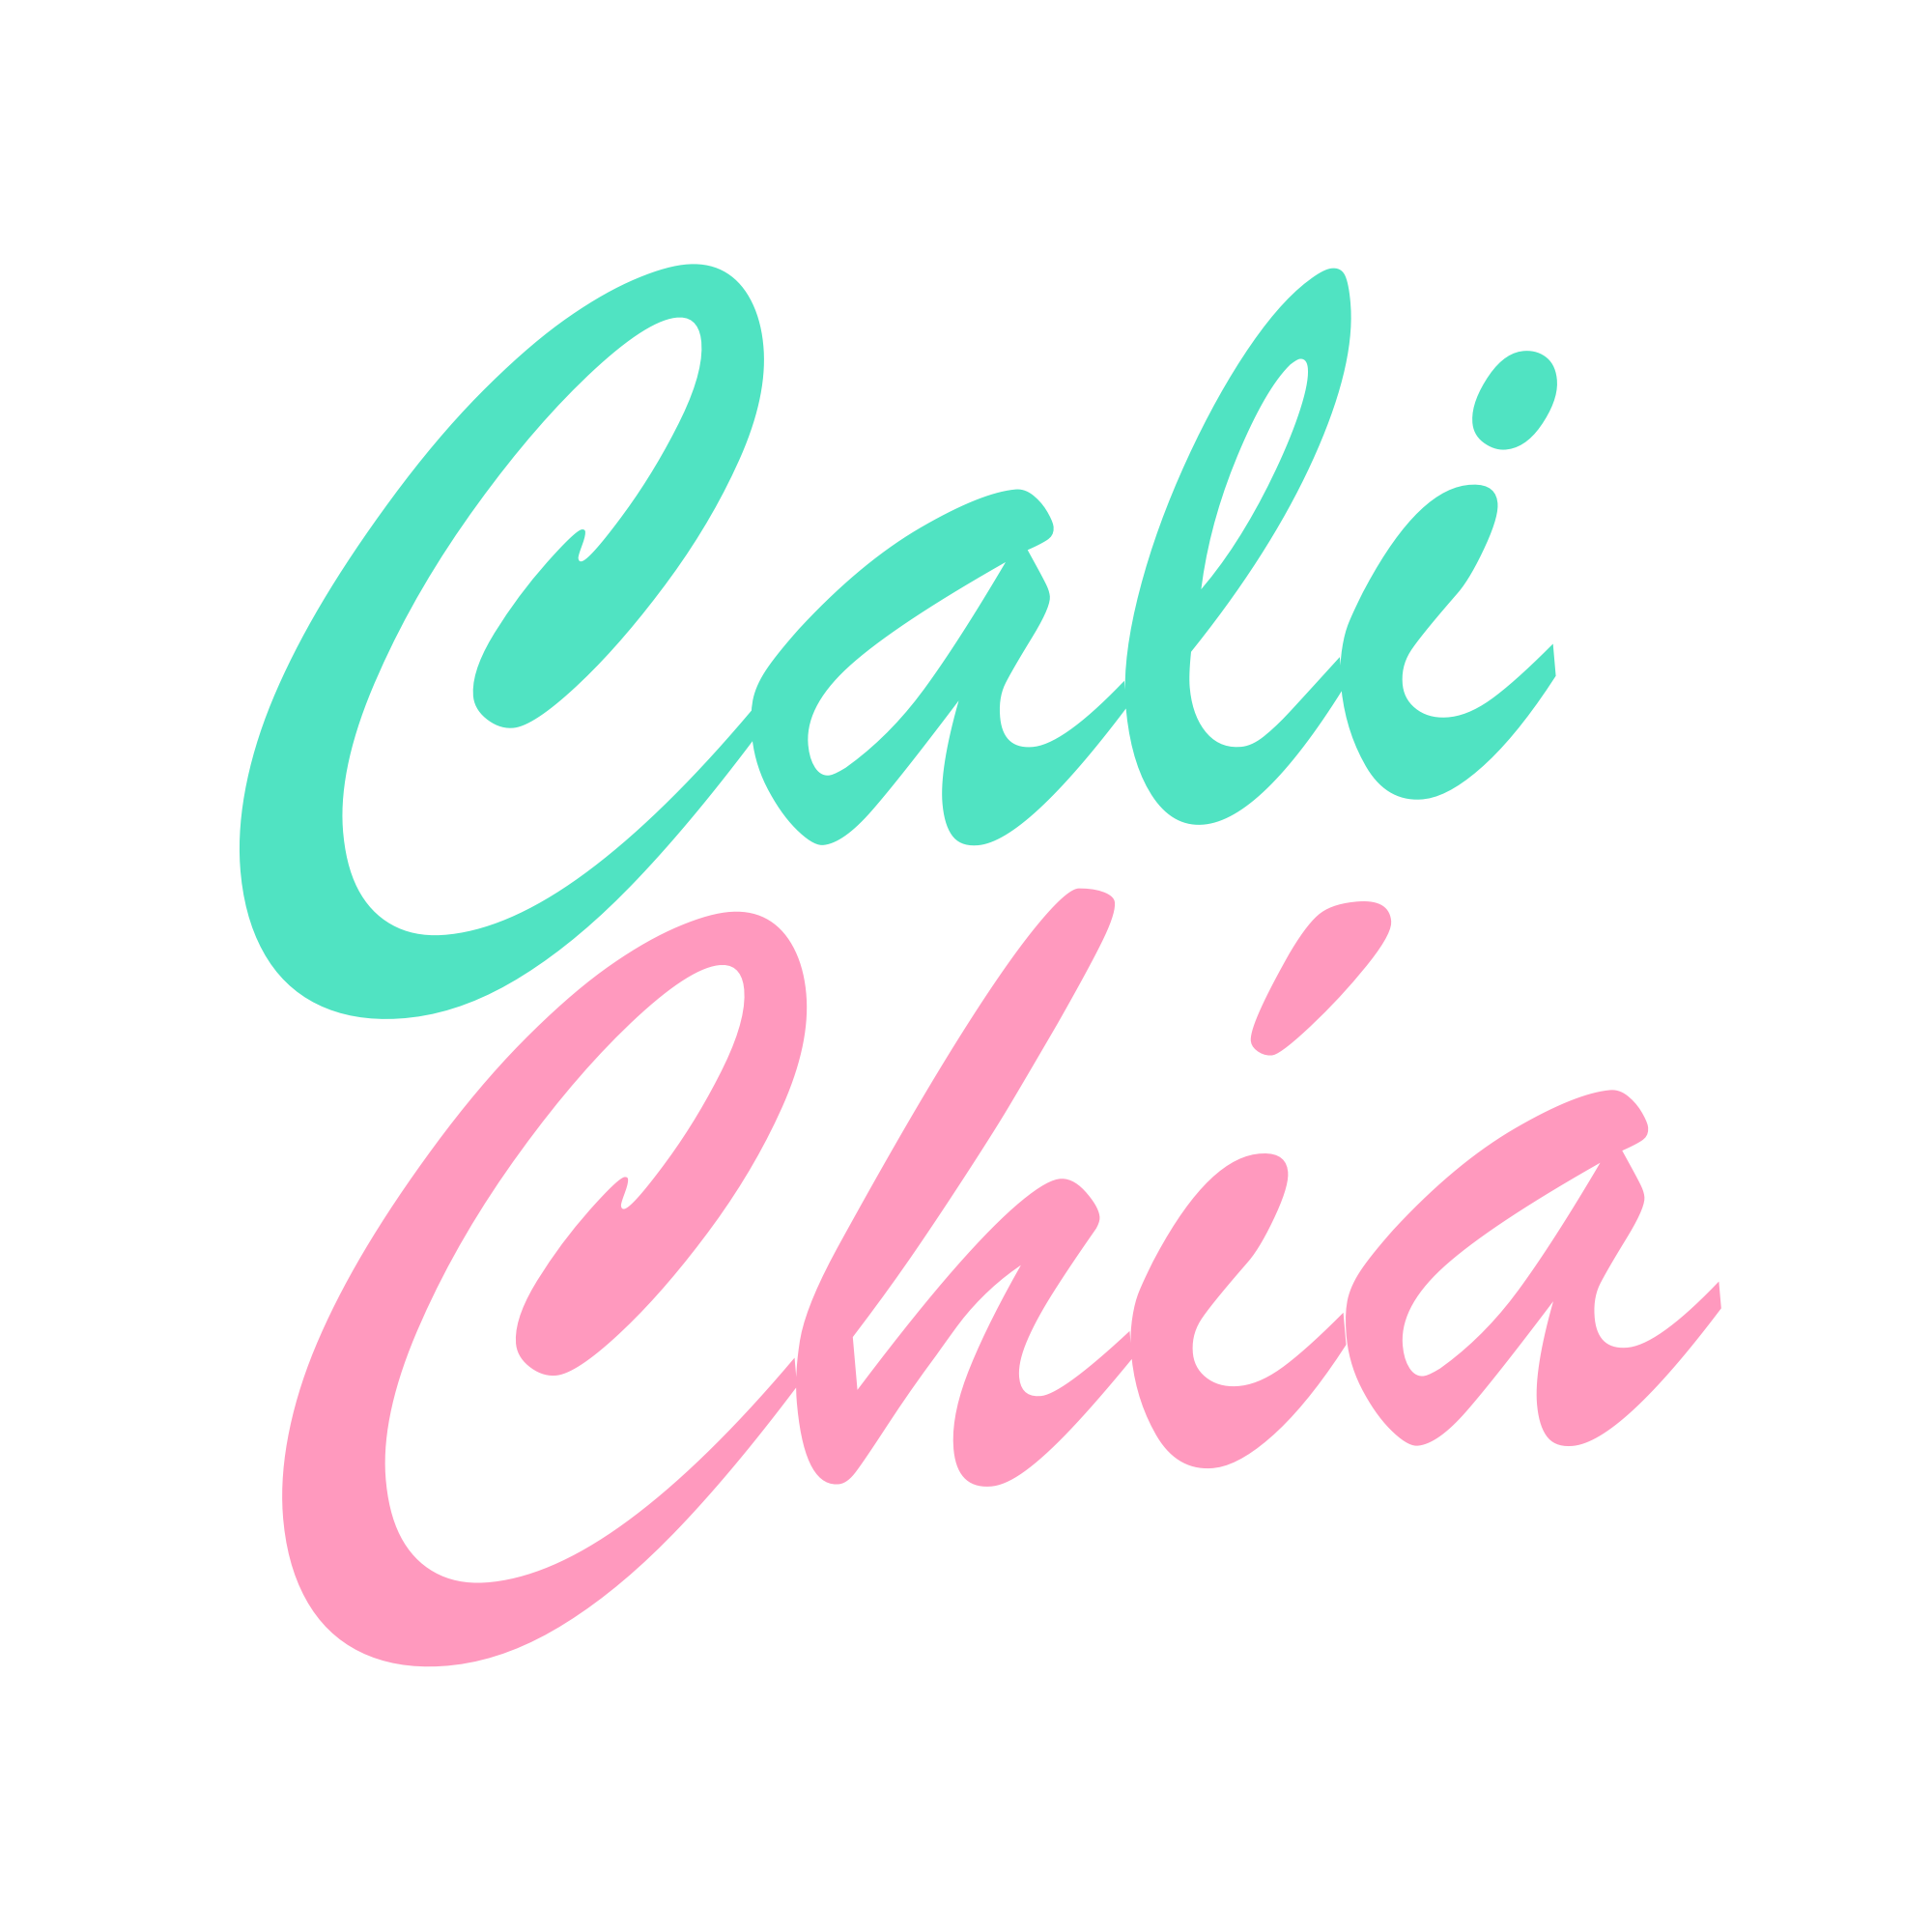 Cali Chía